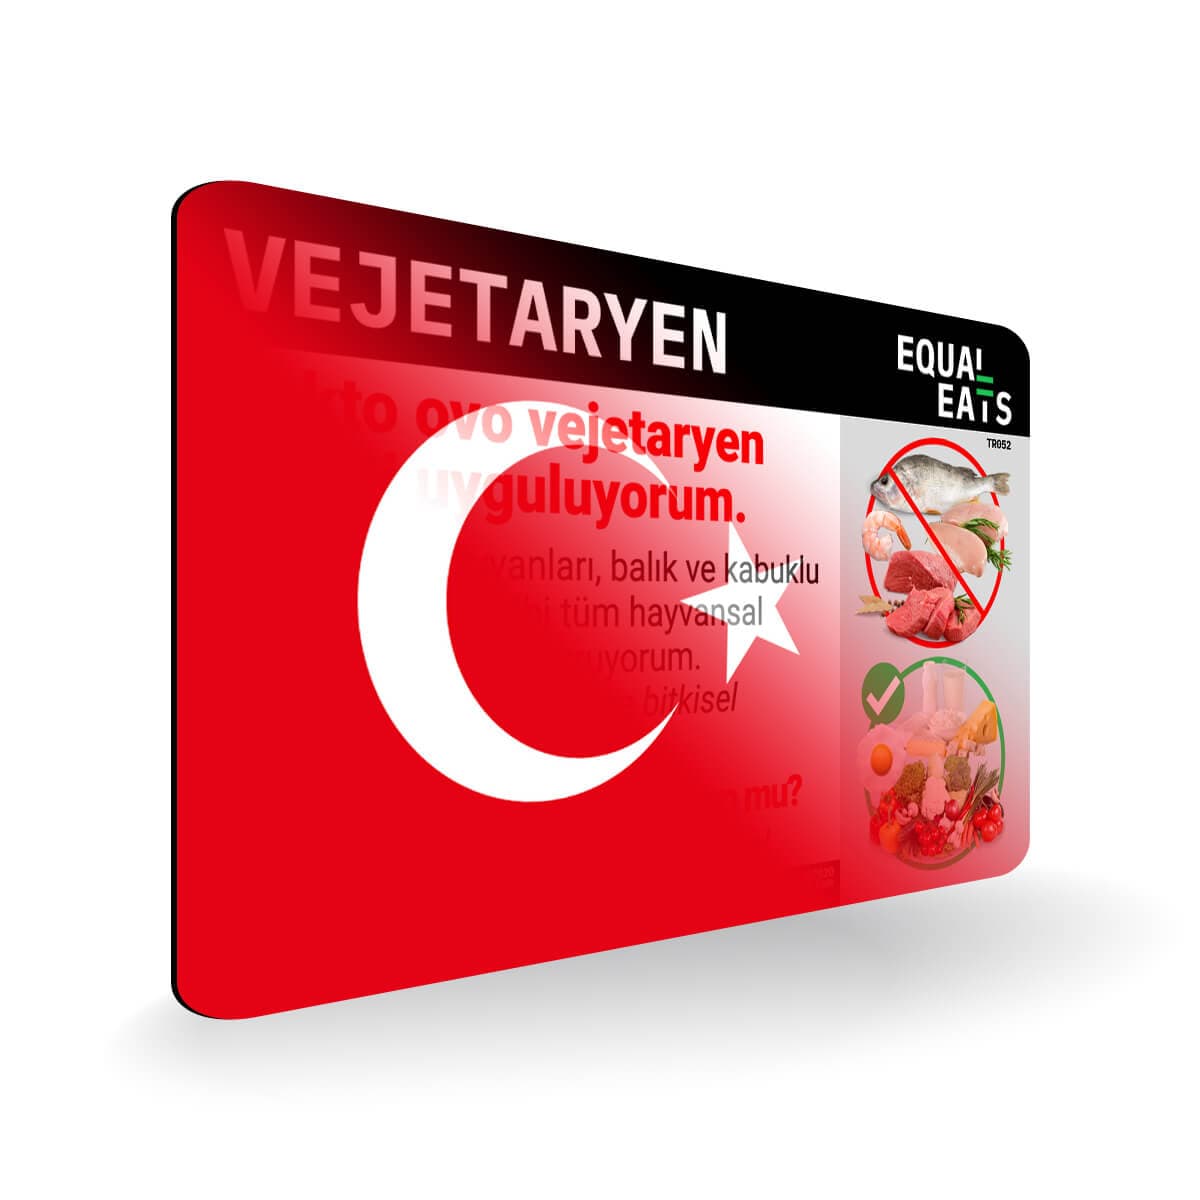 Lacto Ovo Vegetarian Diet in Turkish. Vegetarian Card for Turkey